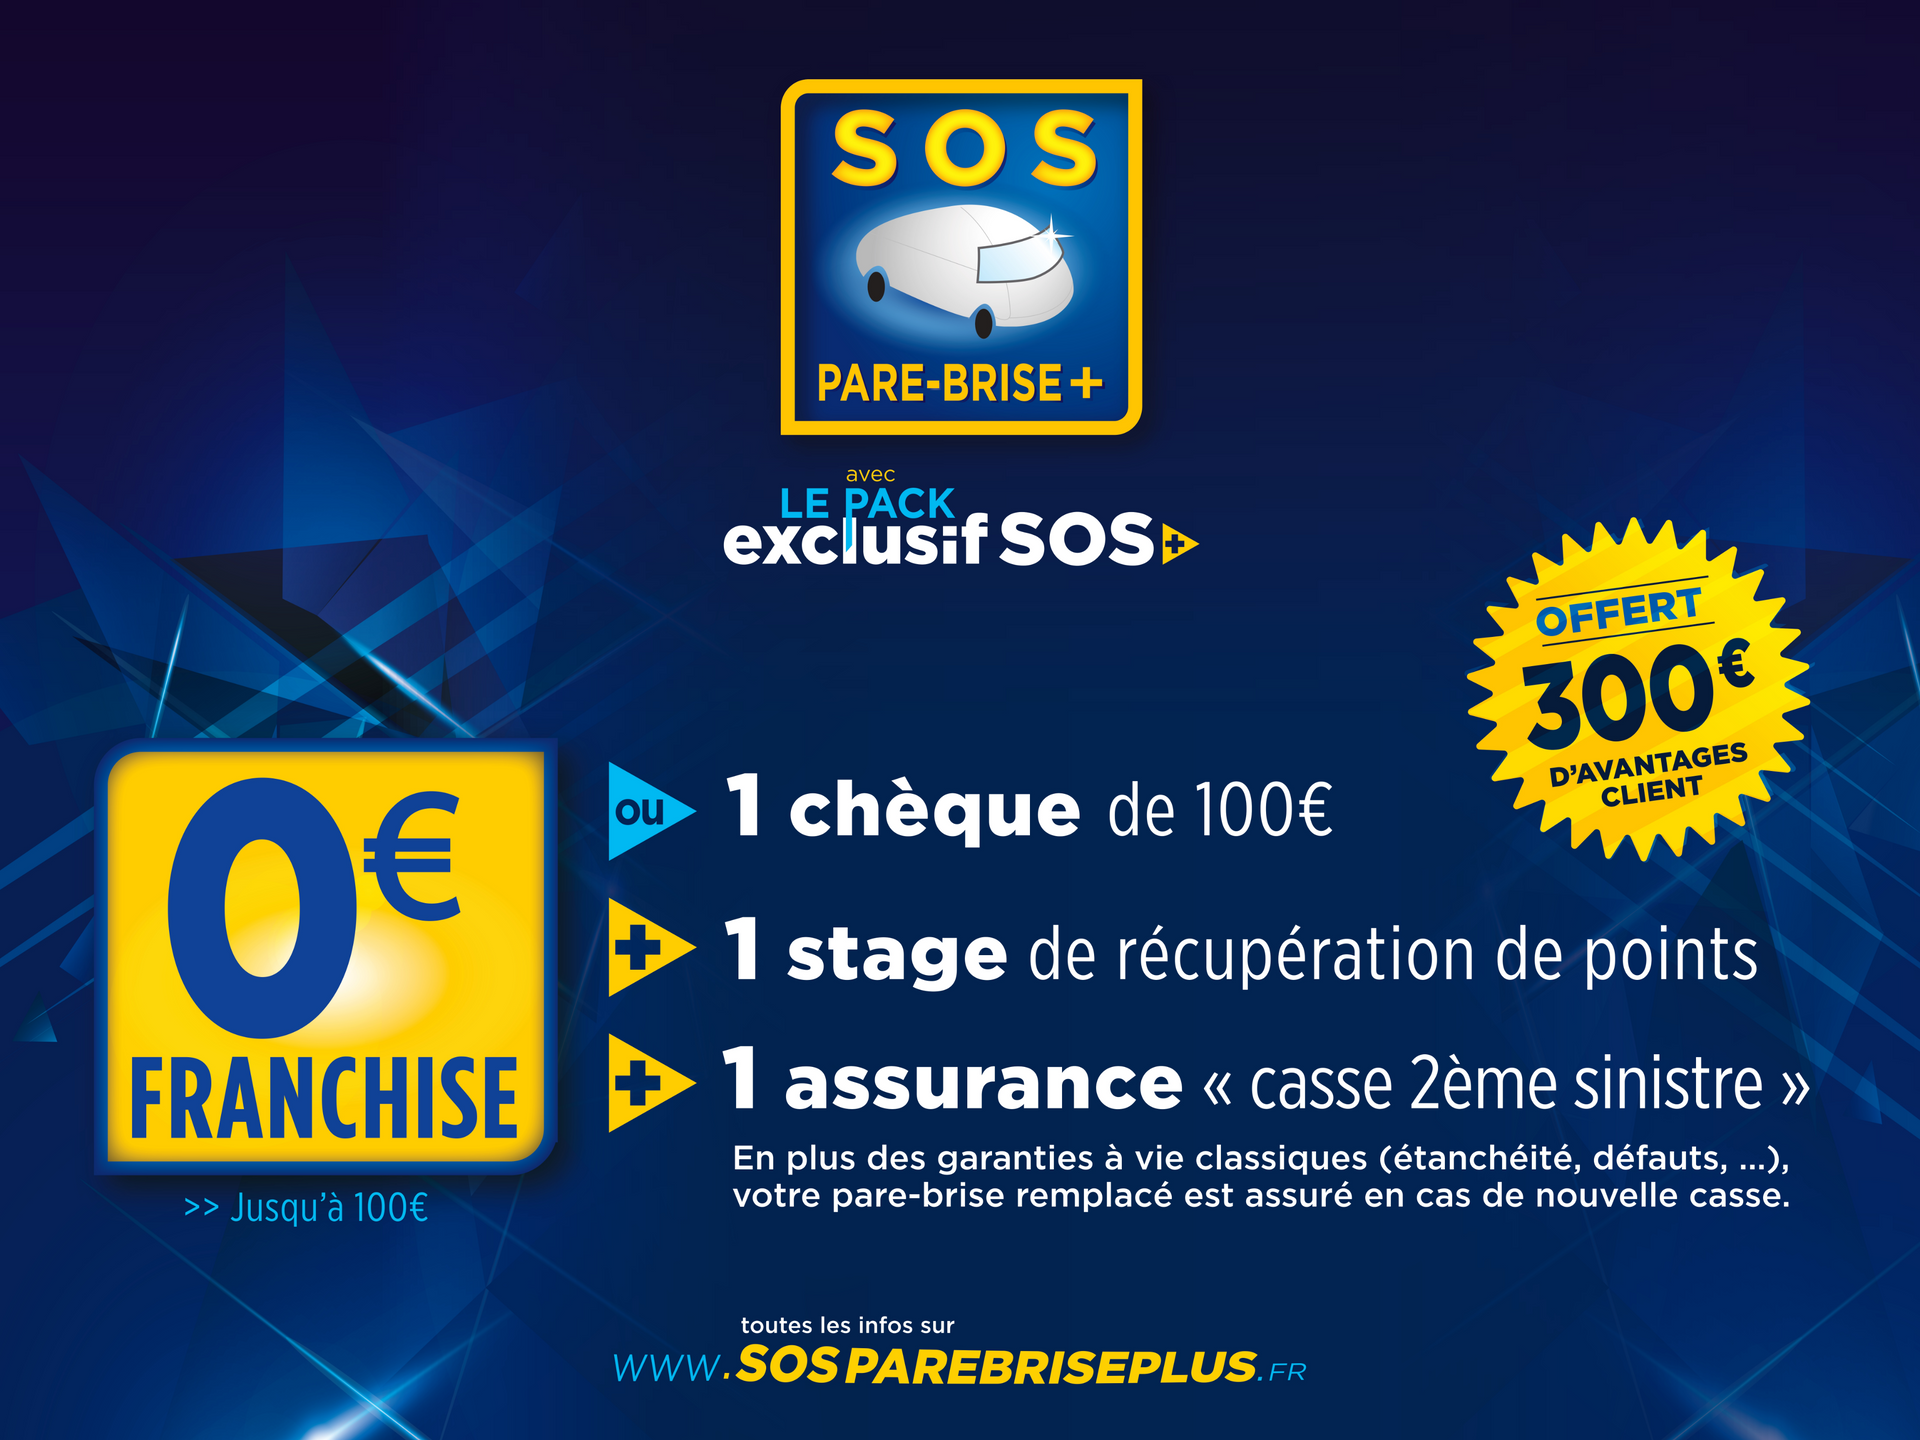 SOS Pare-Brise+ avec le pack exclusif SOS+, 0€ de franchise et 300€ d'avantage client offert